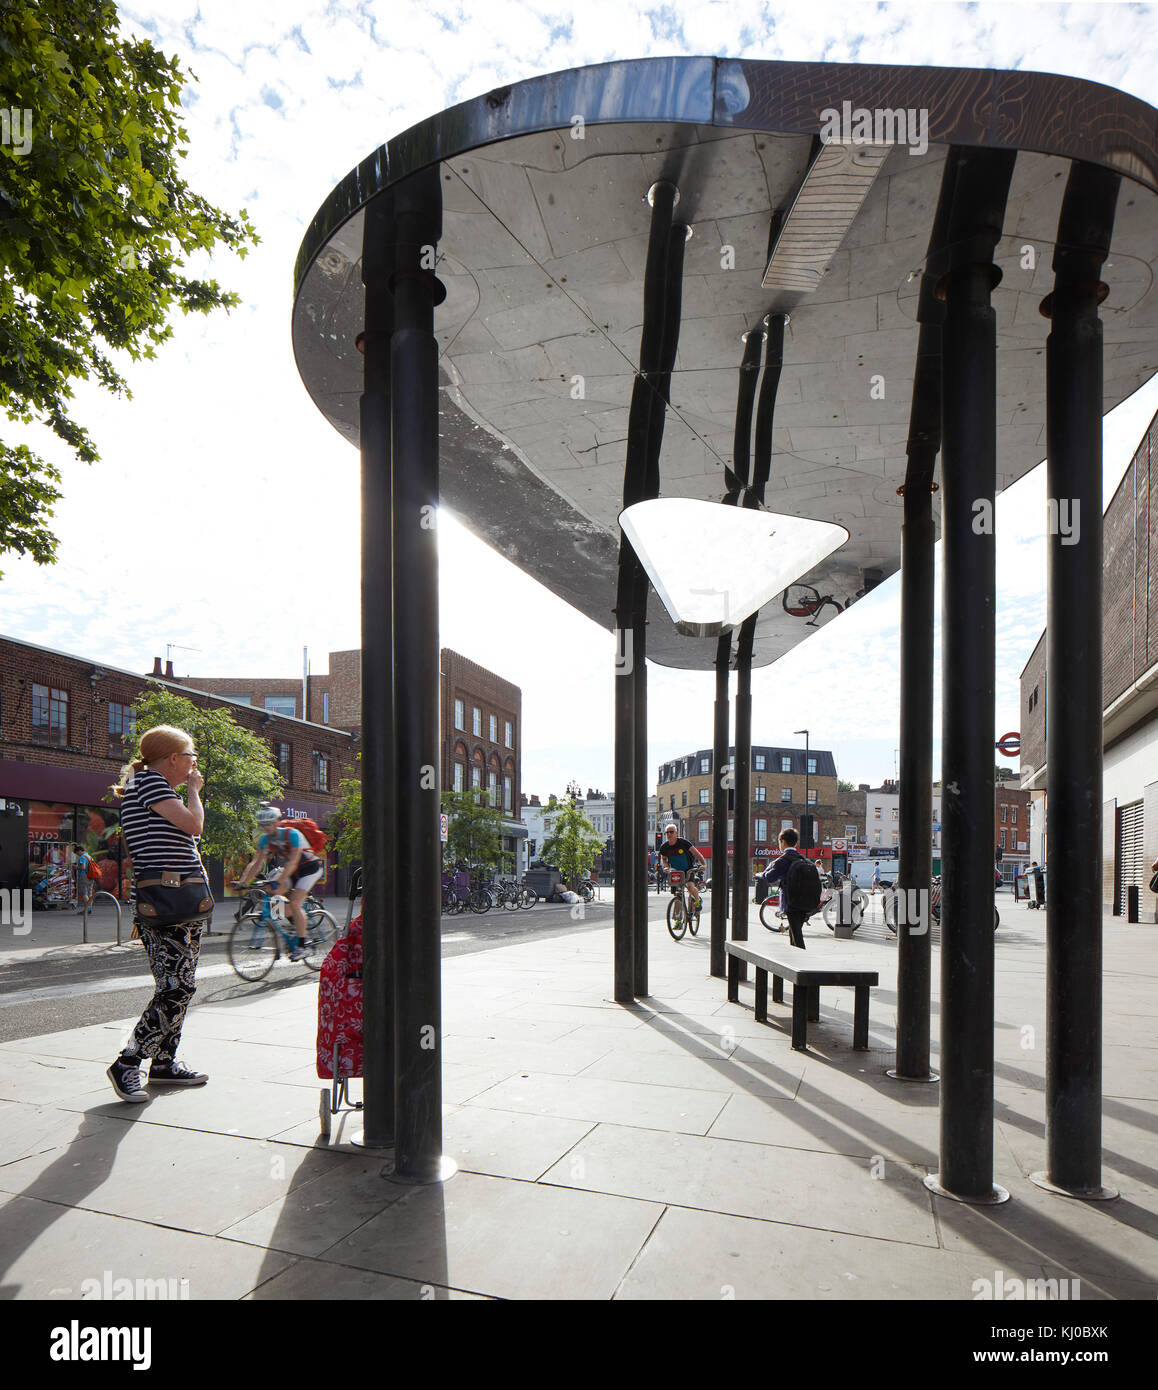 Arrêt de bus Route Binfield canopée. Stockwell Framework Masterplan, Londres, Royaume-Uni. Architecte : DSDHA, 2017. Banque D'Images